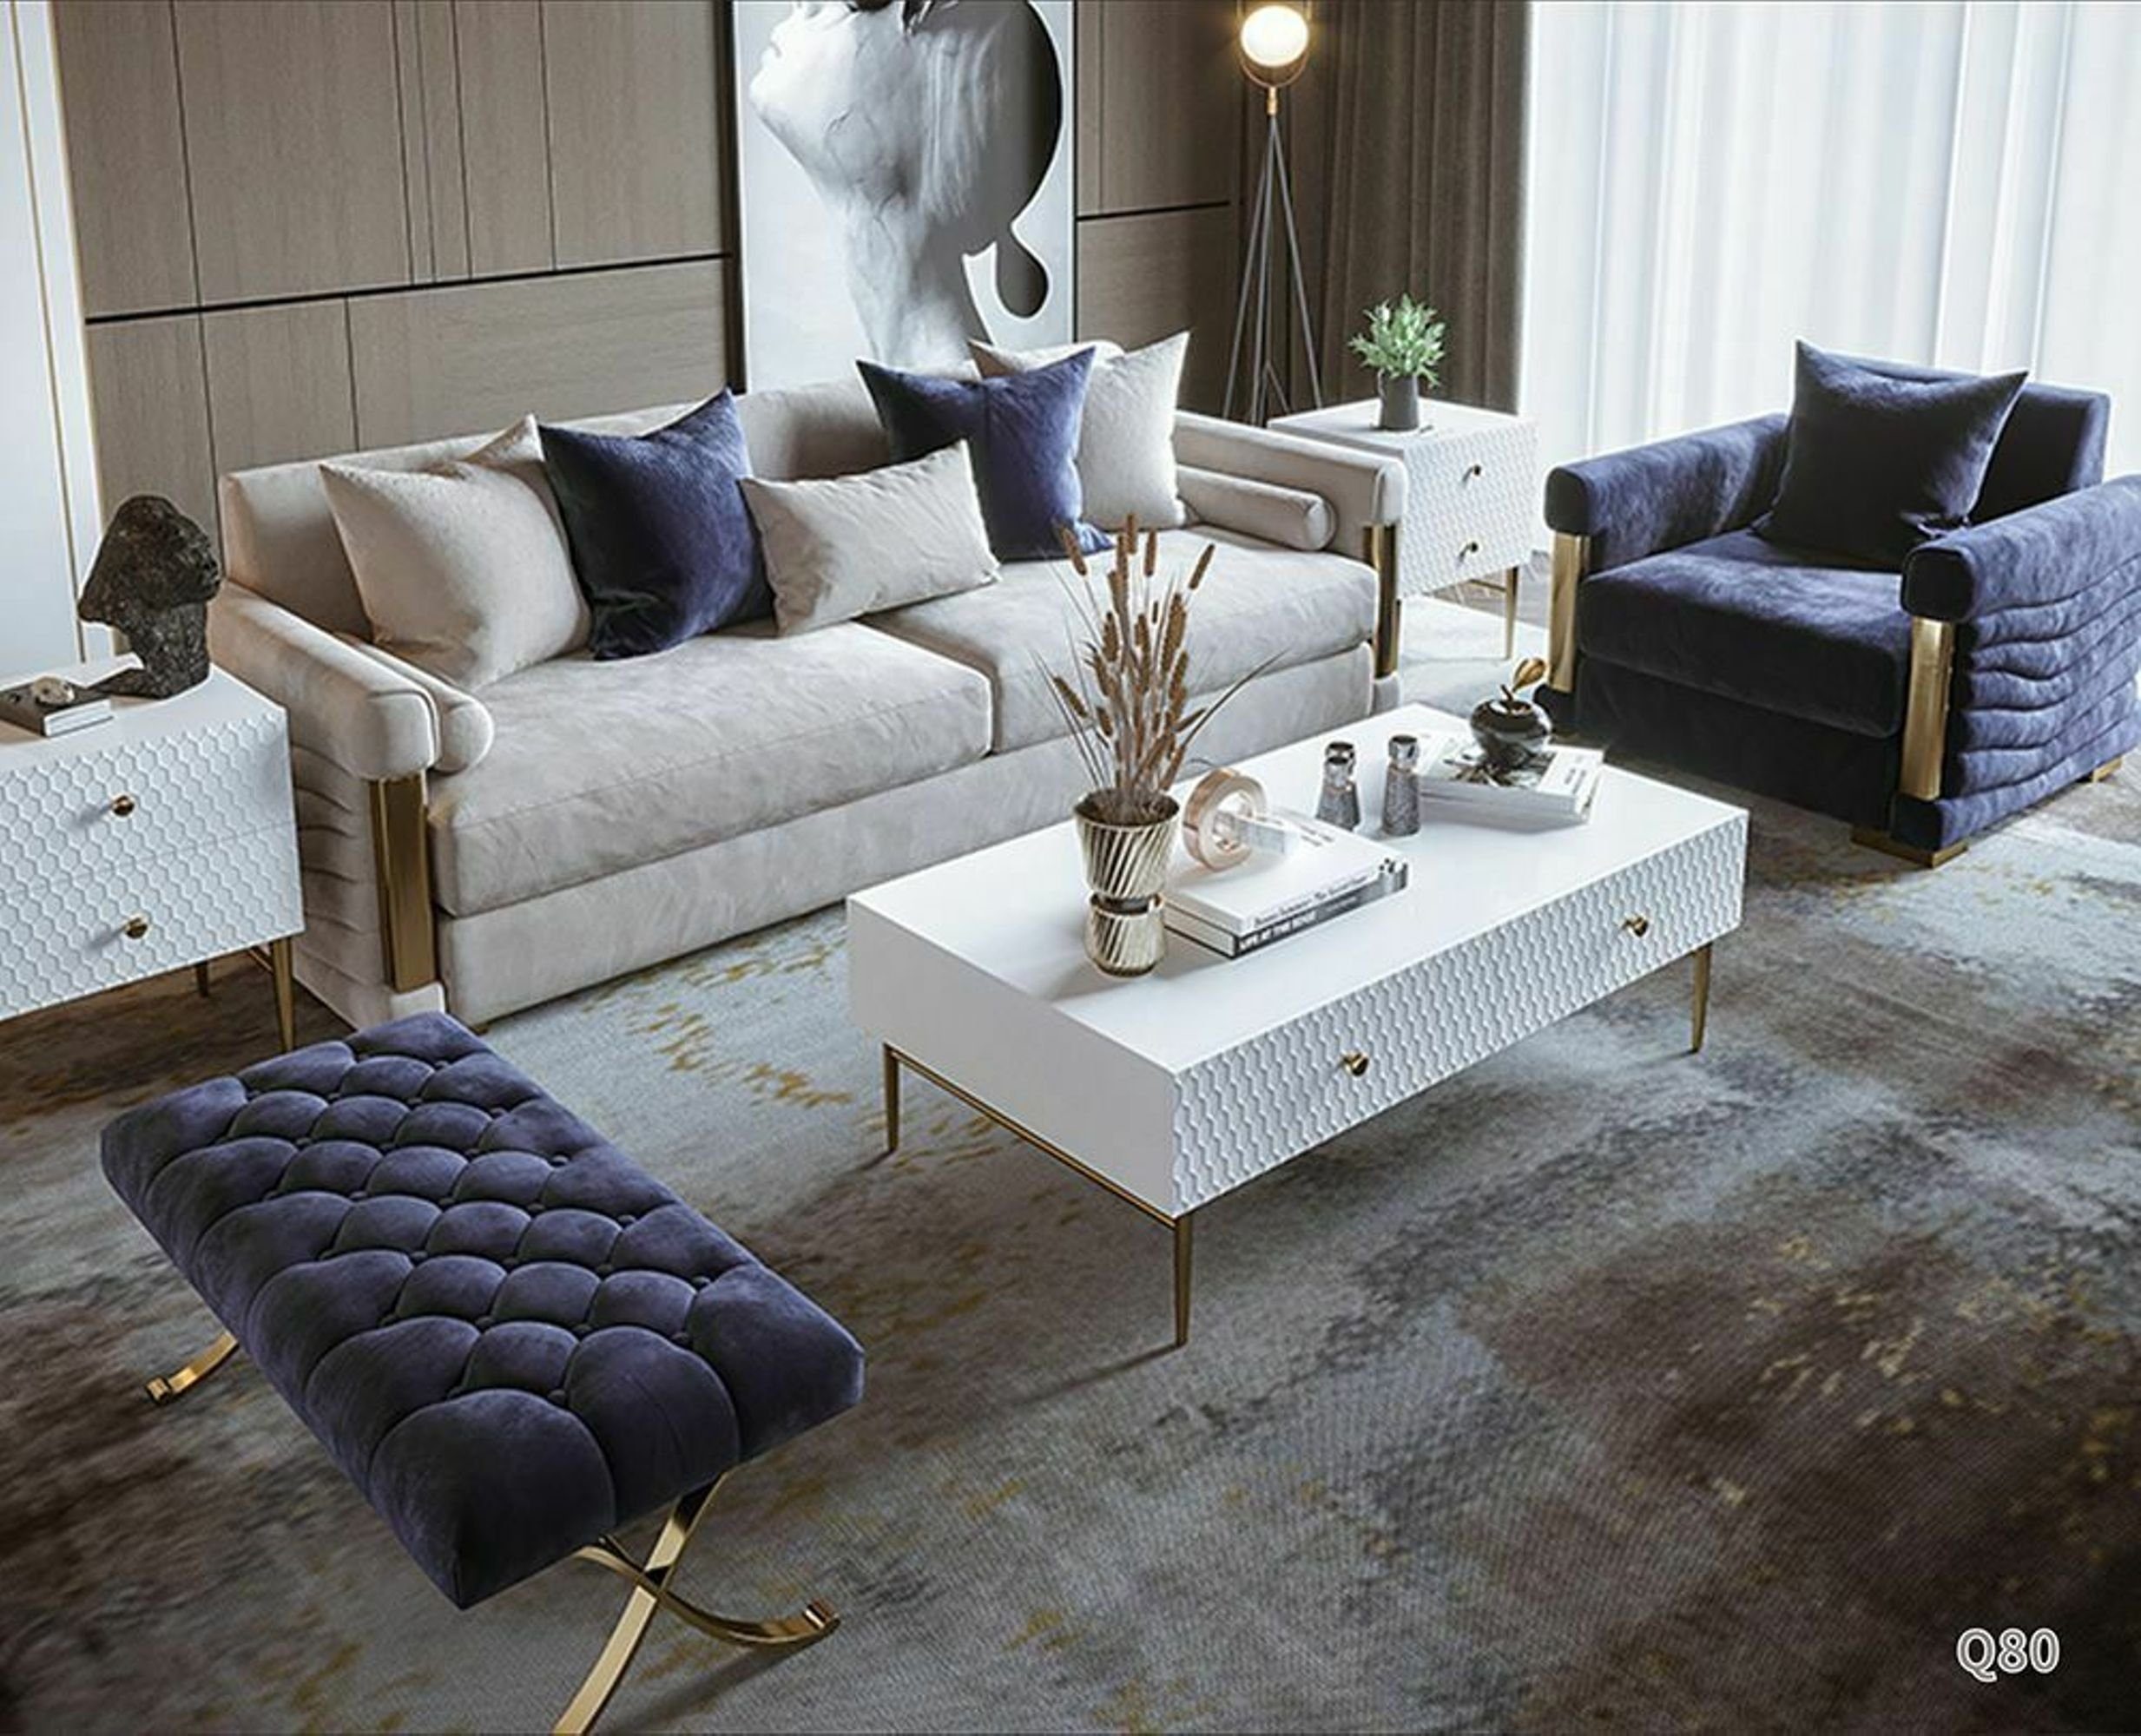 JVmoebel Sofa Designer Garnitur Polster Textil Couch Sitz Europe Sitzer, Made in Garnituren 3+1